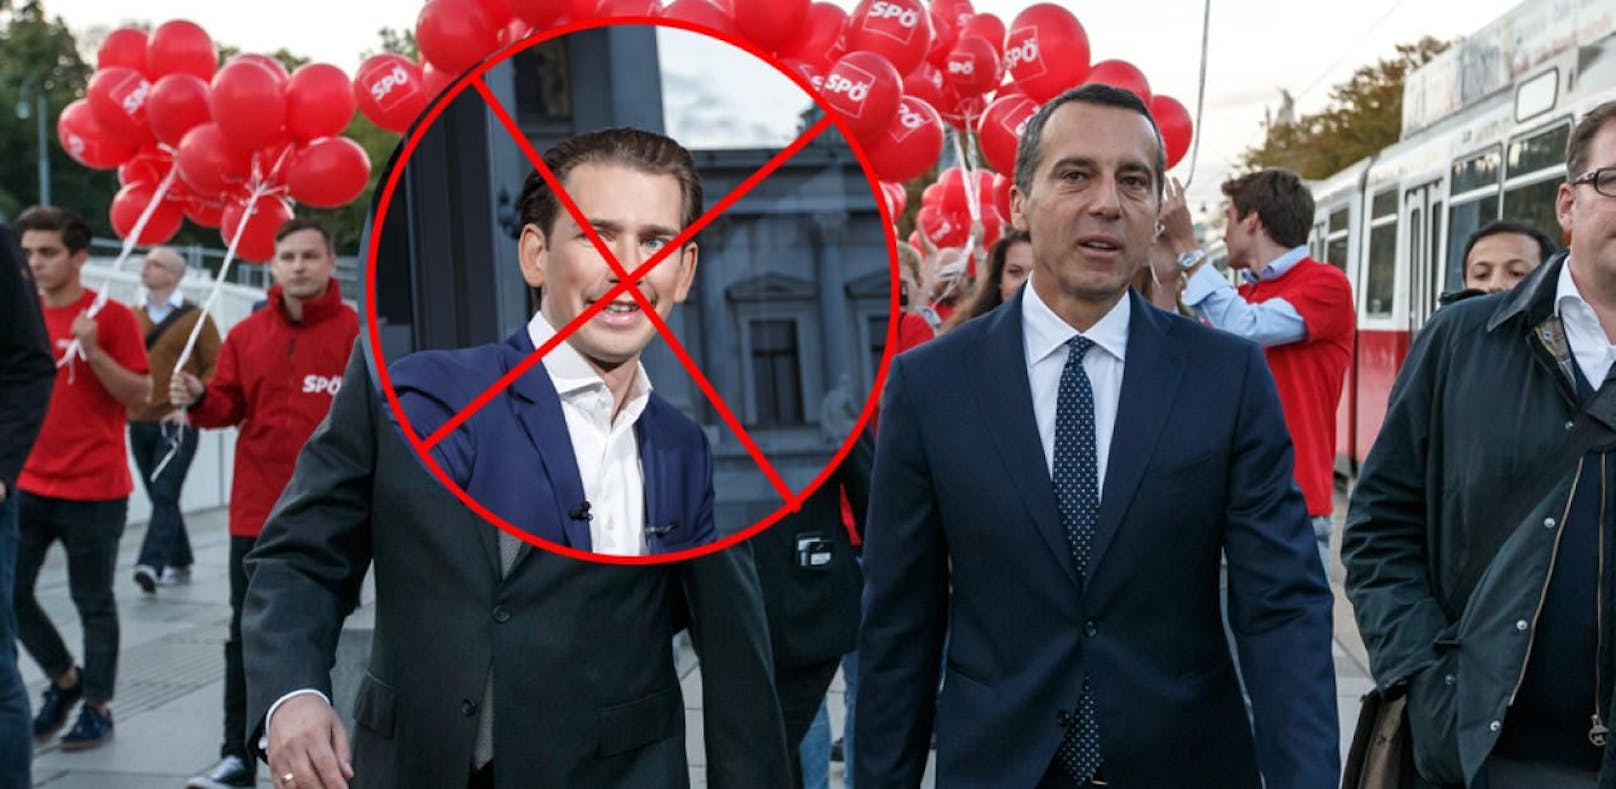 Ein internes SPÖ-Video gegen Sebastian Kurz sorgt für Aufregung.